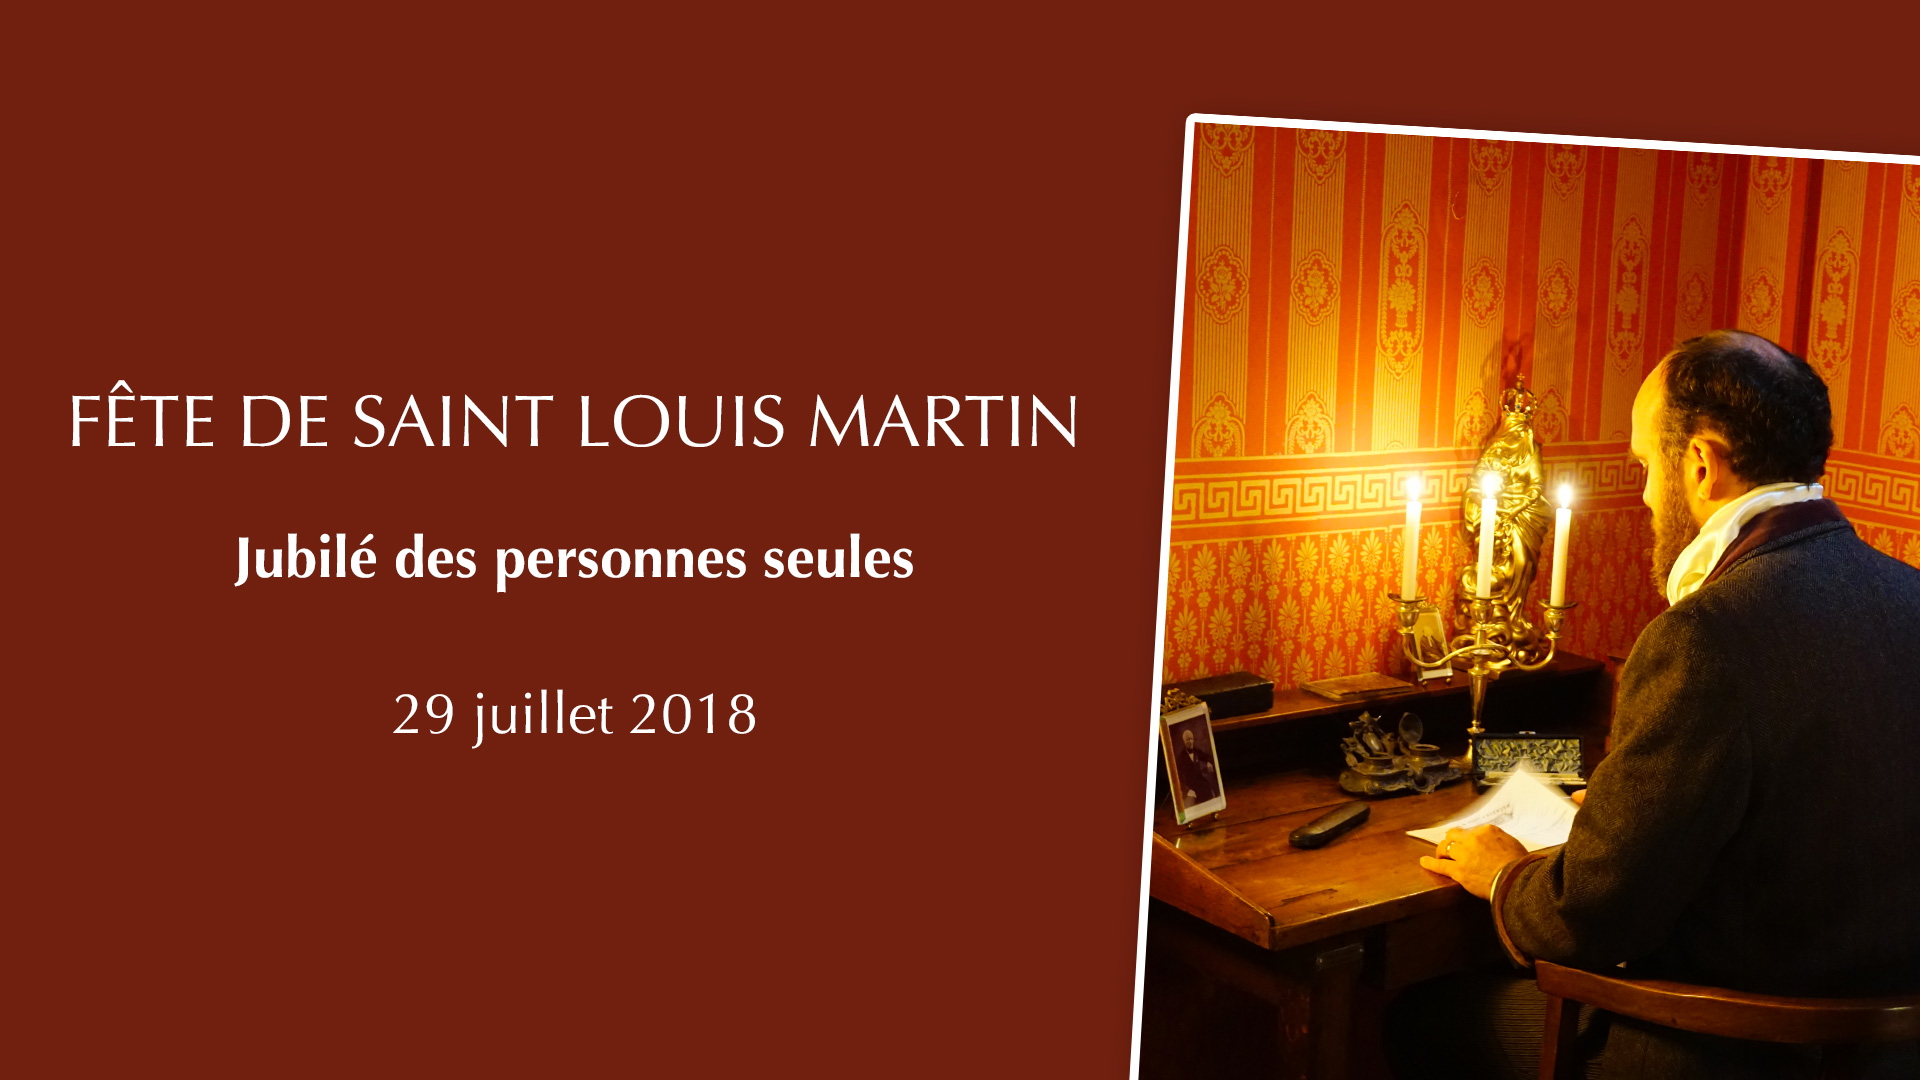 Fête de saint Louis Martin – Jubilé des personnes seules le 29 juillet 2018 au Sanctuaire d’Alençon (61)